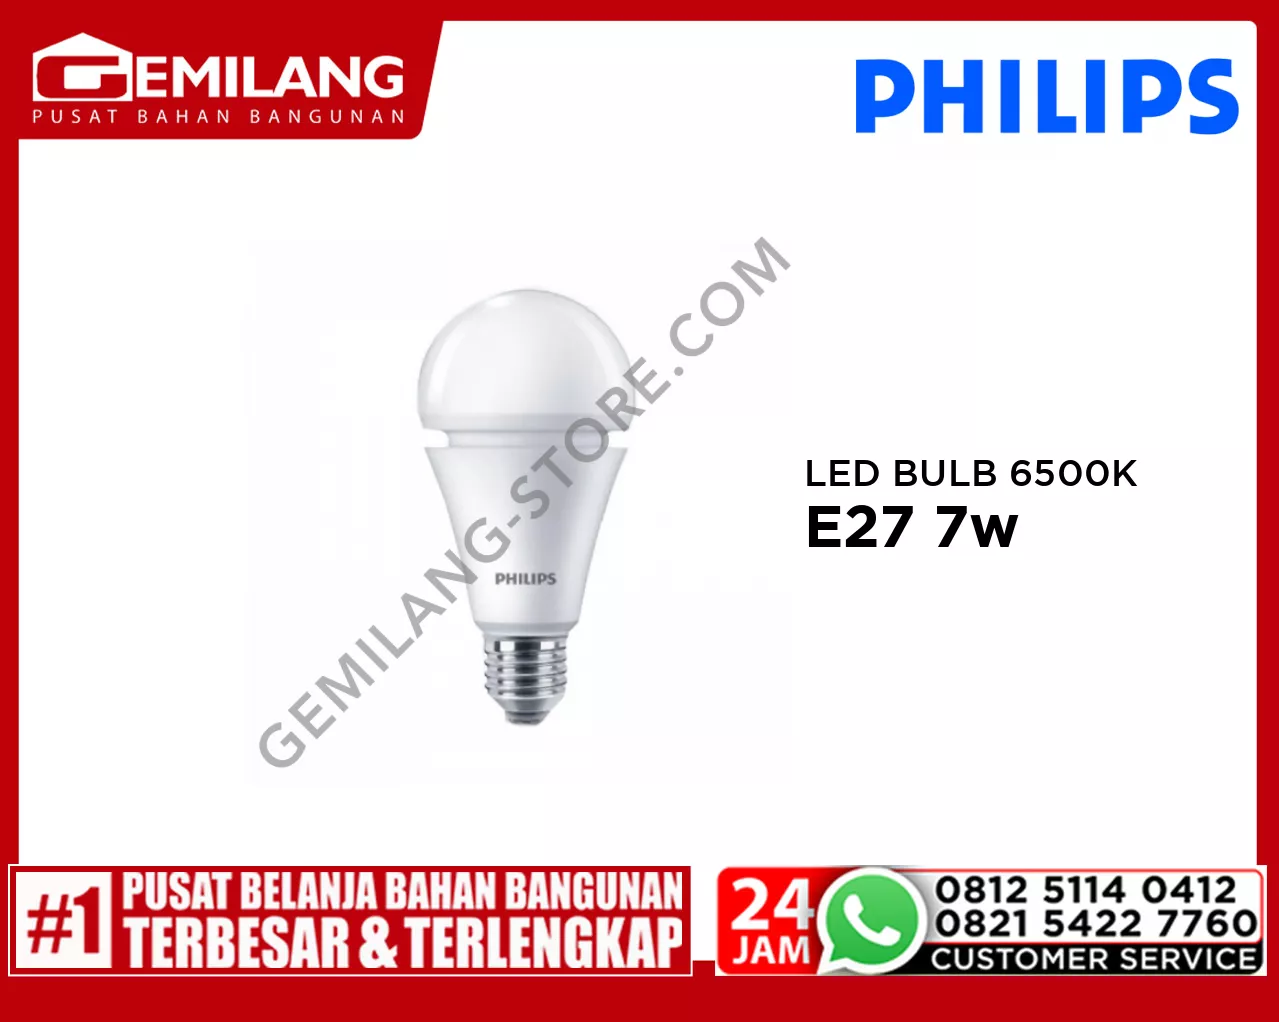 PHILIPS LED BULB 6500K BB E27 7w/7.5w